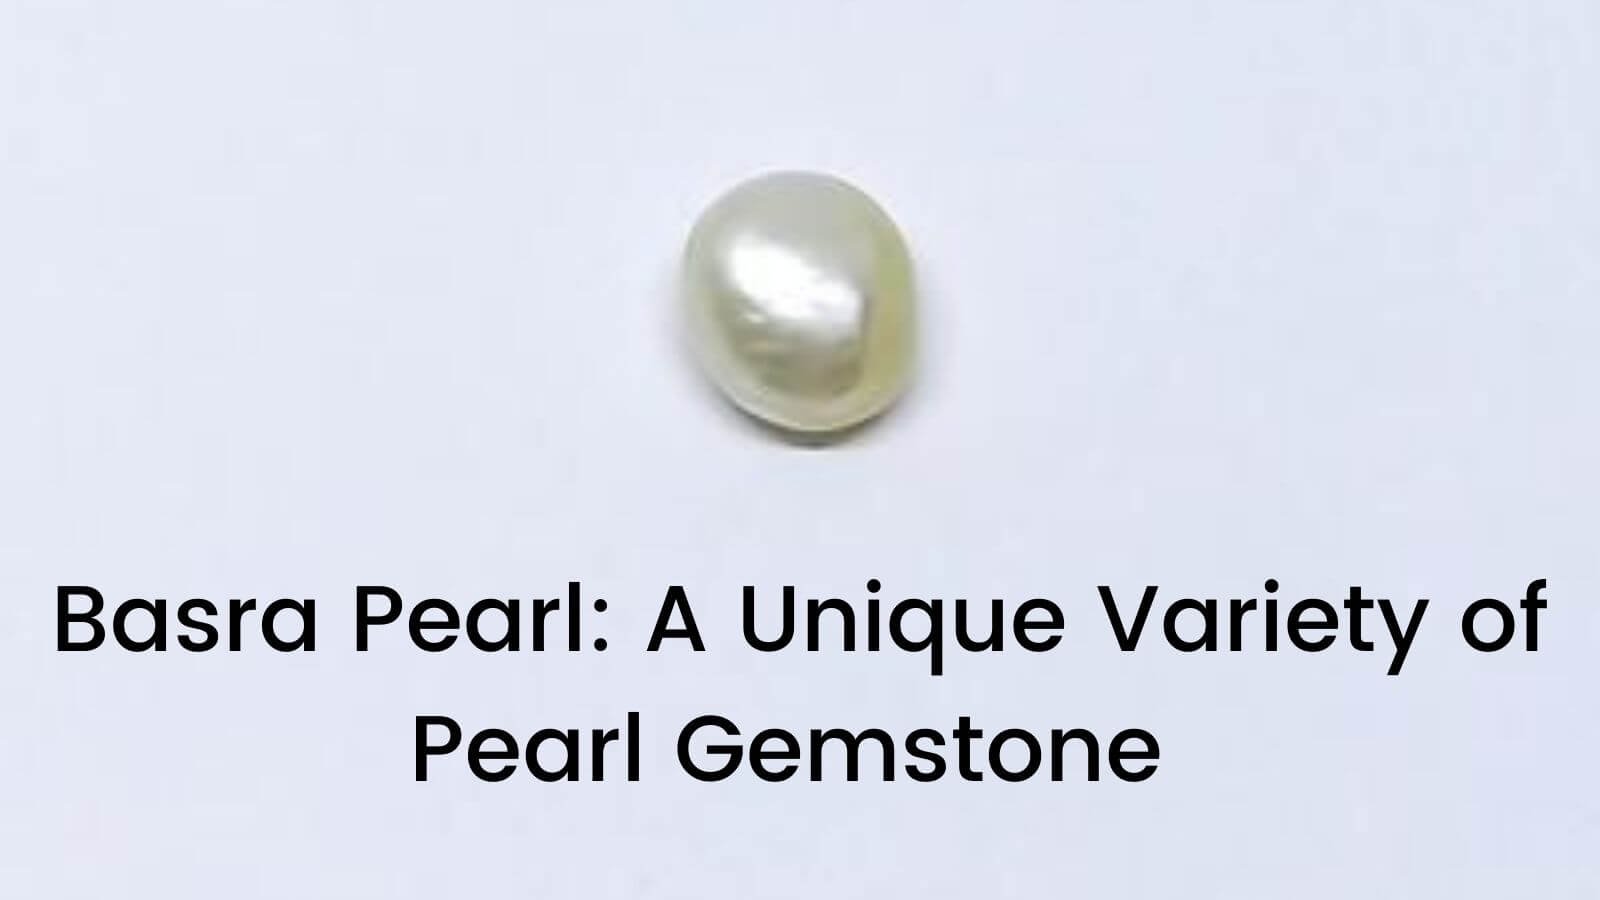 Basra Pearl: Variety of Pearl Gemstone